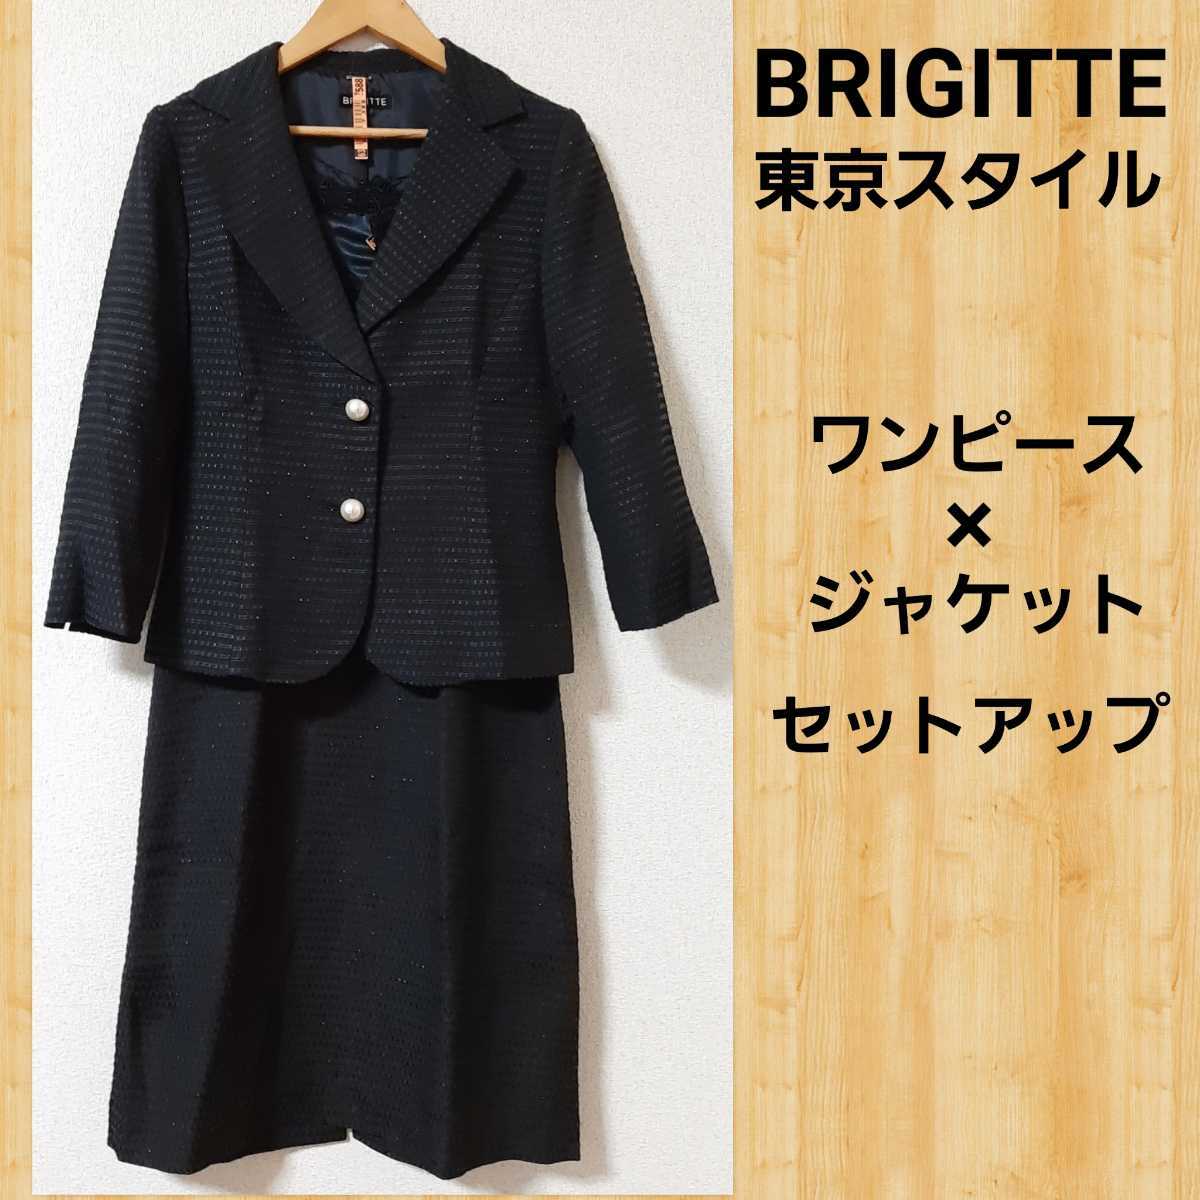 購入60000円 BRIGITTE ブリジット スーツ セット 9 東京スタイル ワンピース